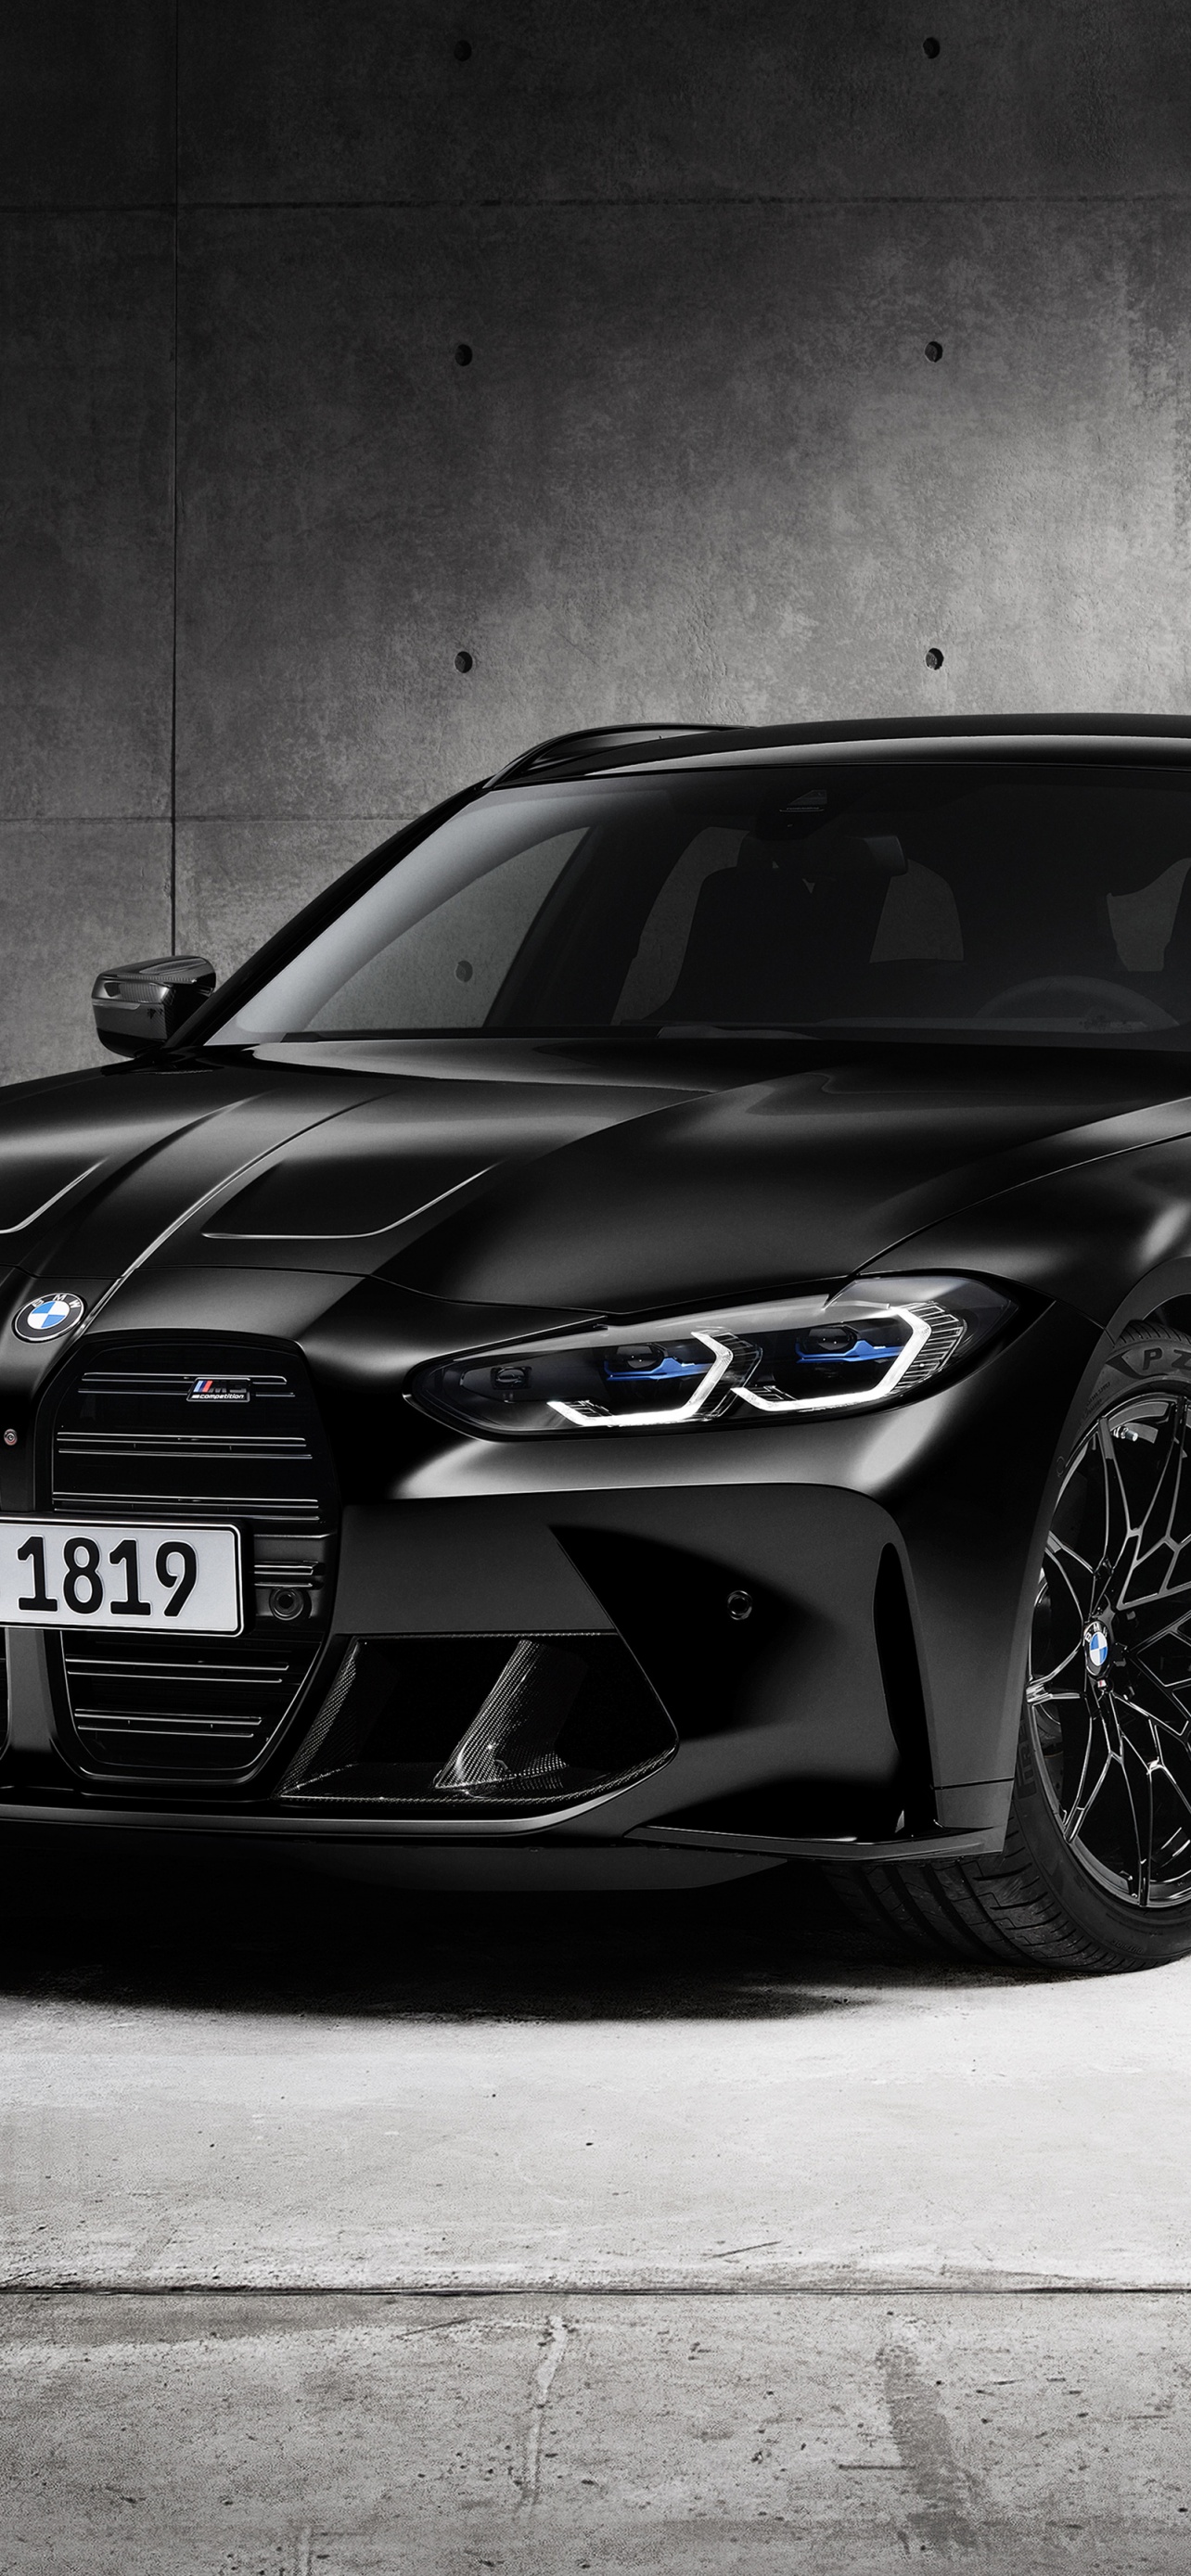 Khám phá chiếc xe ô tô BMW M3 đua Touring đen 4K, năm 2022, 5K đầy ấn tượng và phong cách. Với thiết kế độc đáo, đầy mạnh mẽ và tinh tế, chiếc xe này chắc chắn sẽ khiến bạn trầm trồ ngay từ cái nhìn đầu tiên. Để biết thêm chi tiết về chiếc xe này, hãy xem hình ảnh và cảm nhận sự khác biệt của nó.